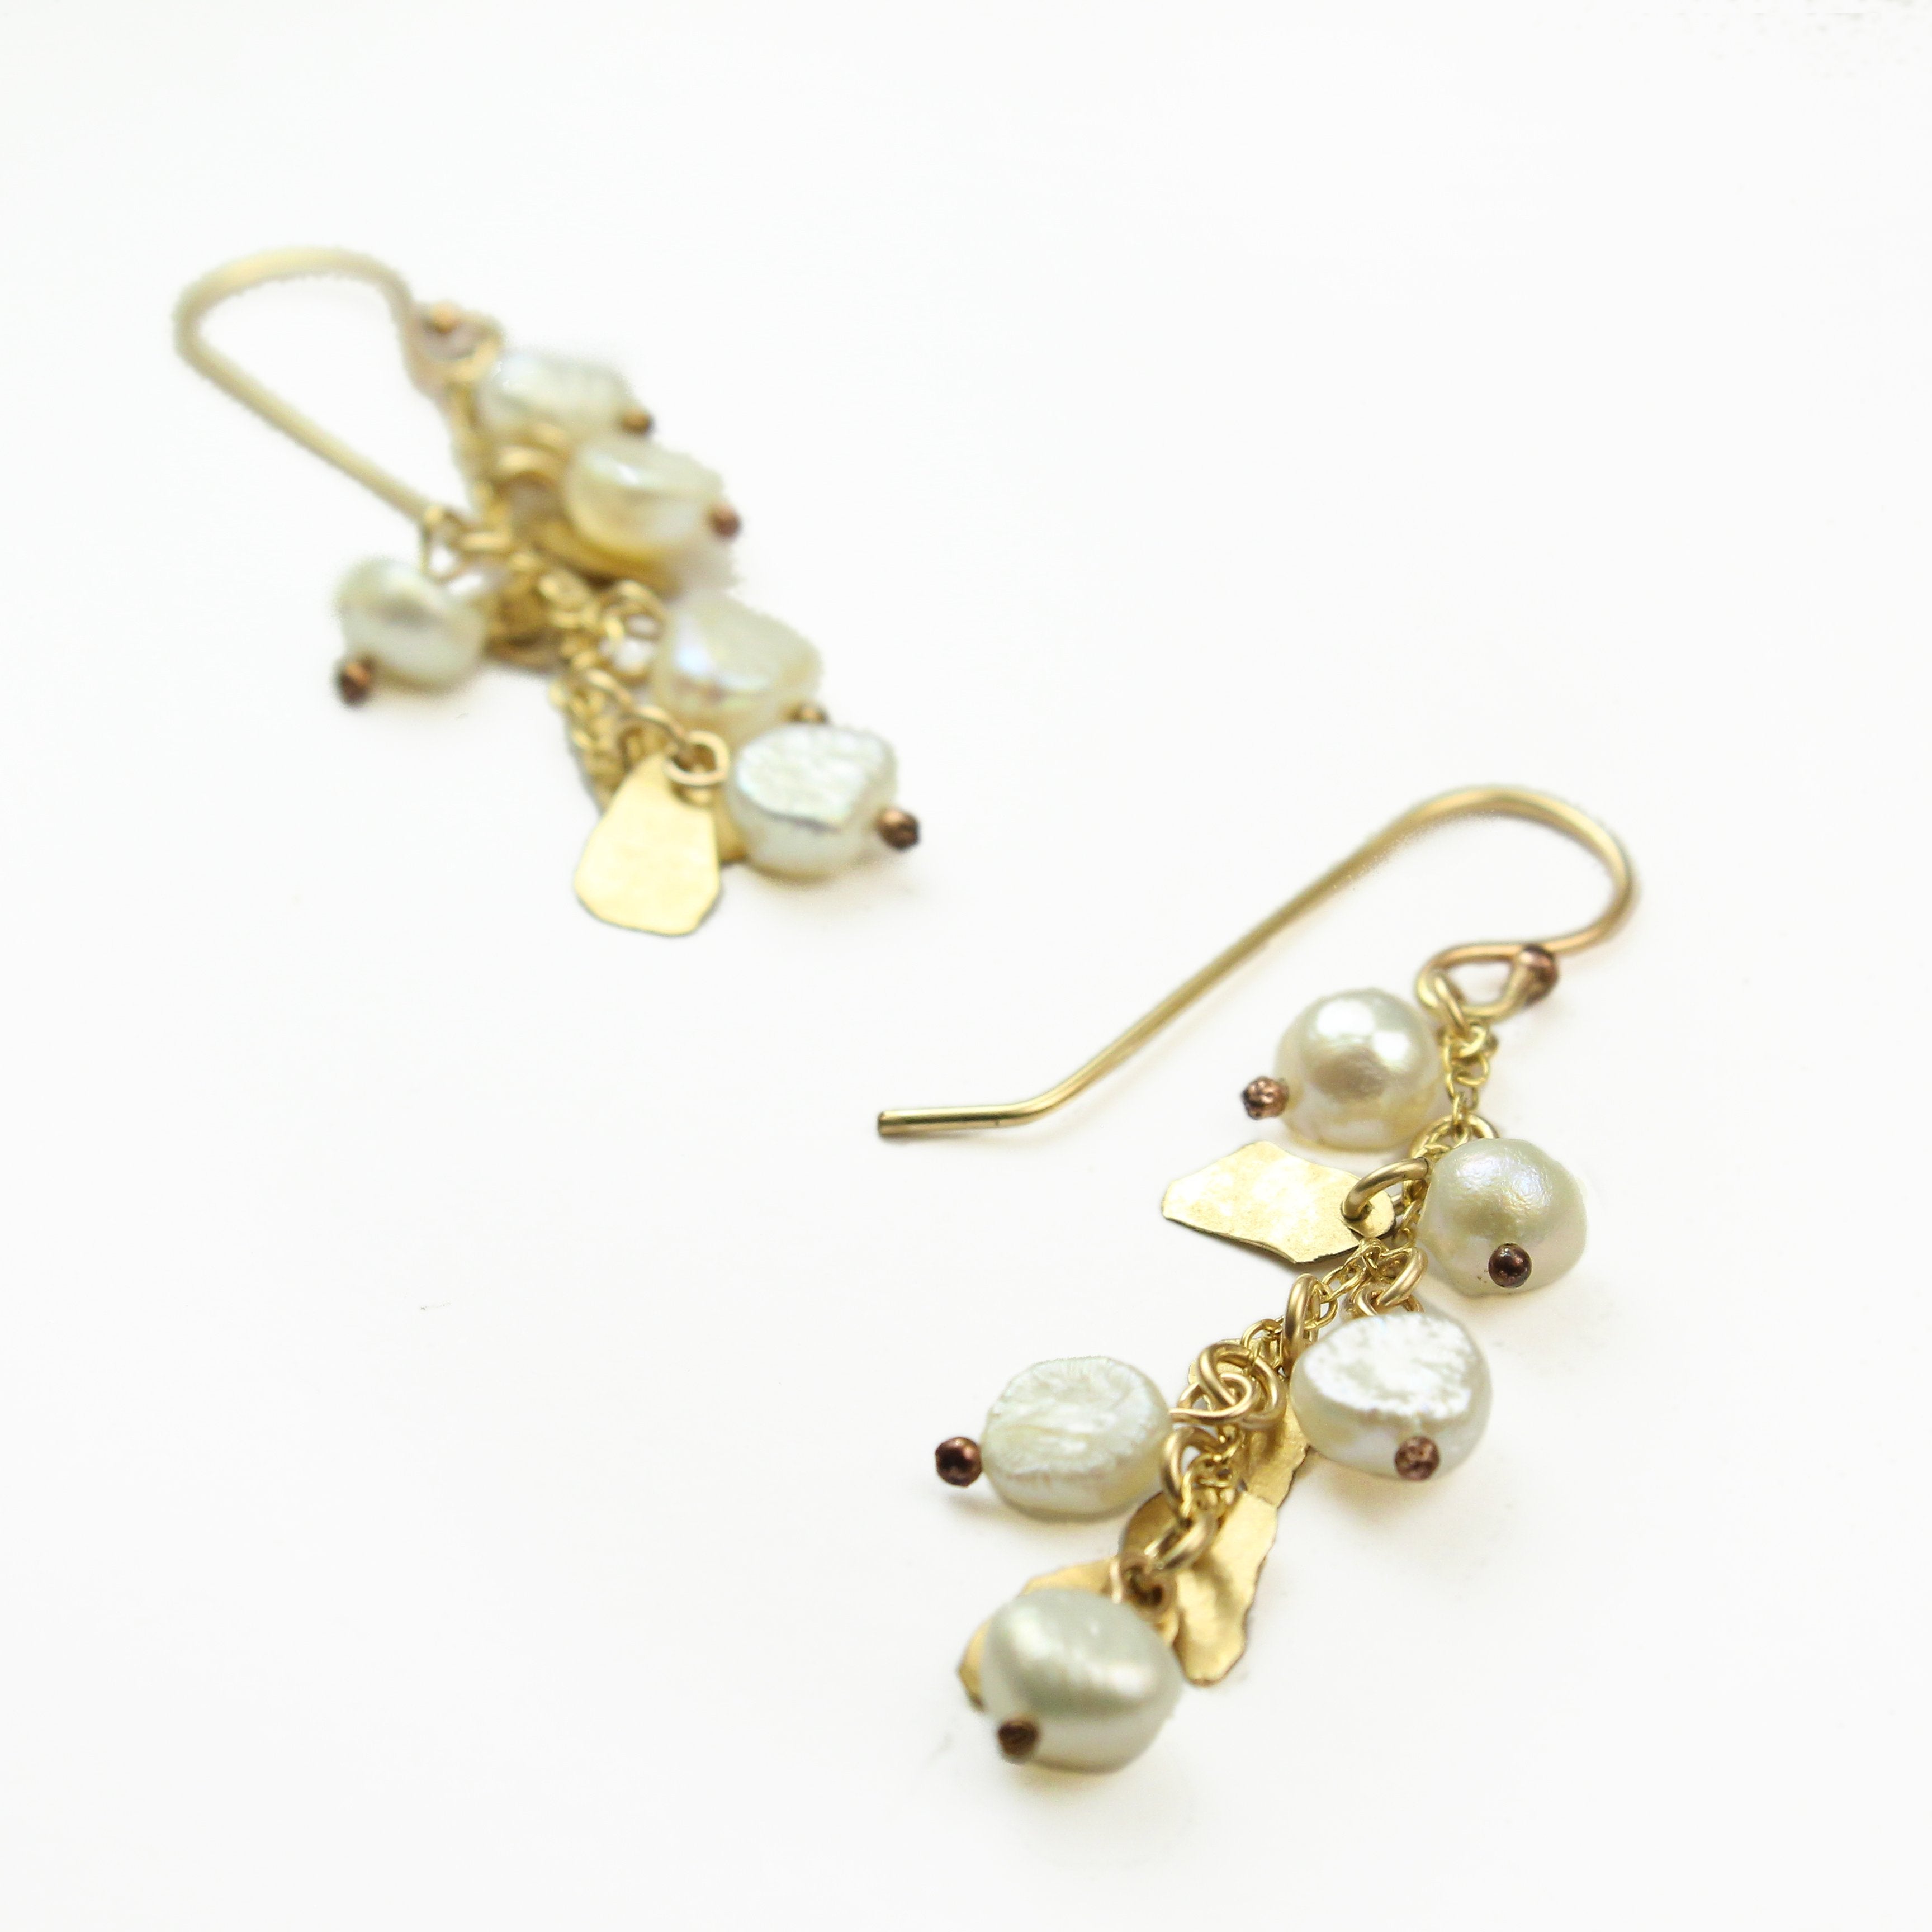 Gold filled Leaves & White Pearls Elegant Earrings - Shulamit Kanter